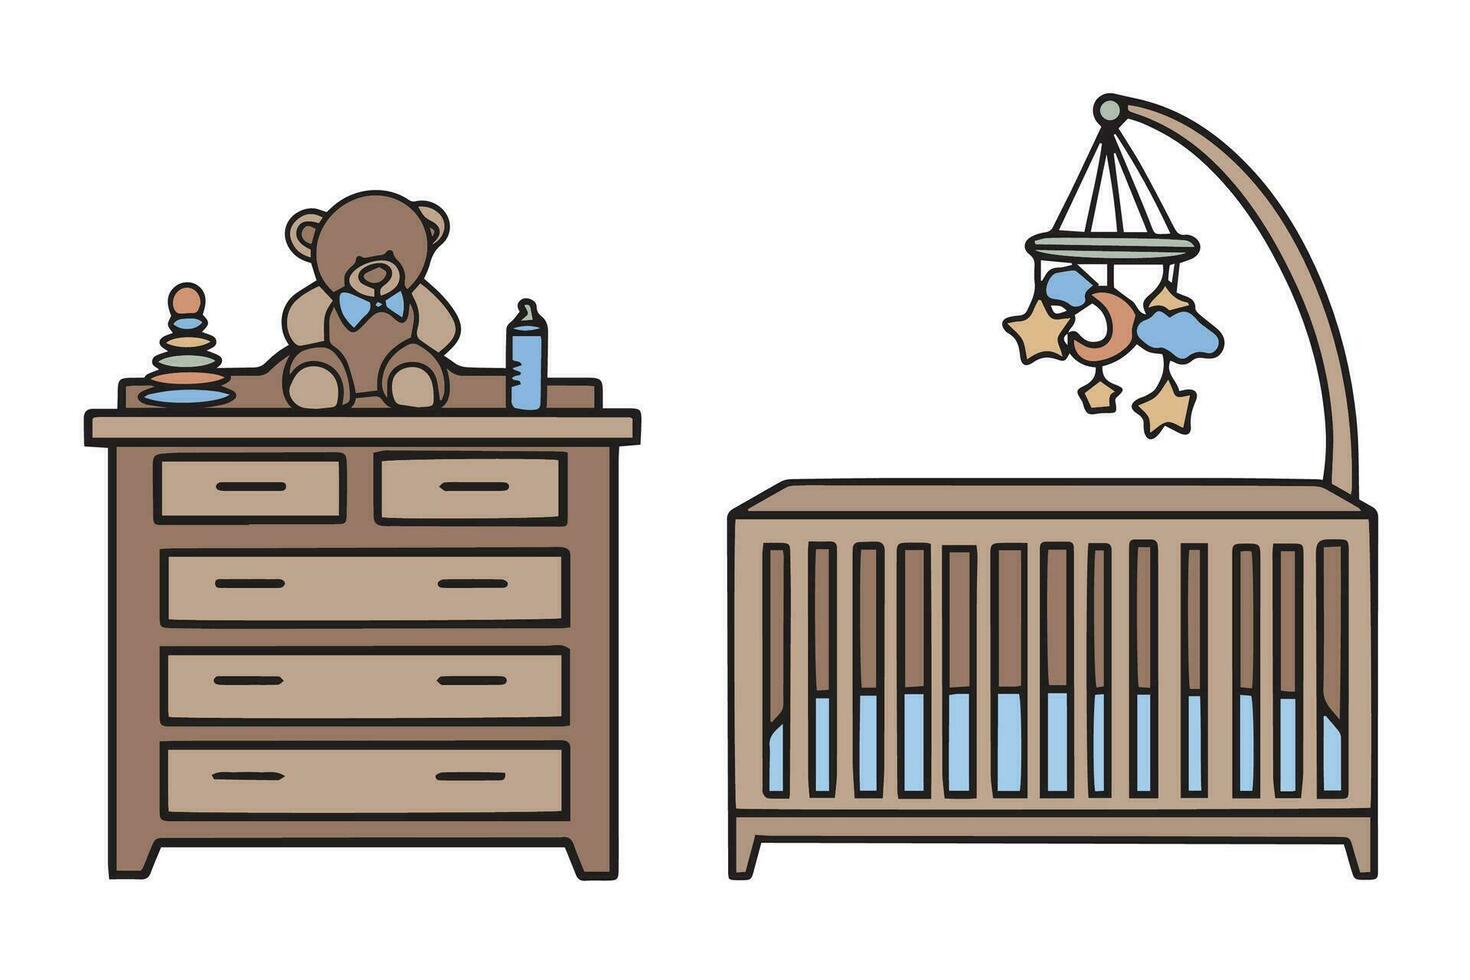 möbel för en barns rum. spjälsäng, leksaker och bröst av lådor med leksaker. klotter illustration. vektor